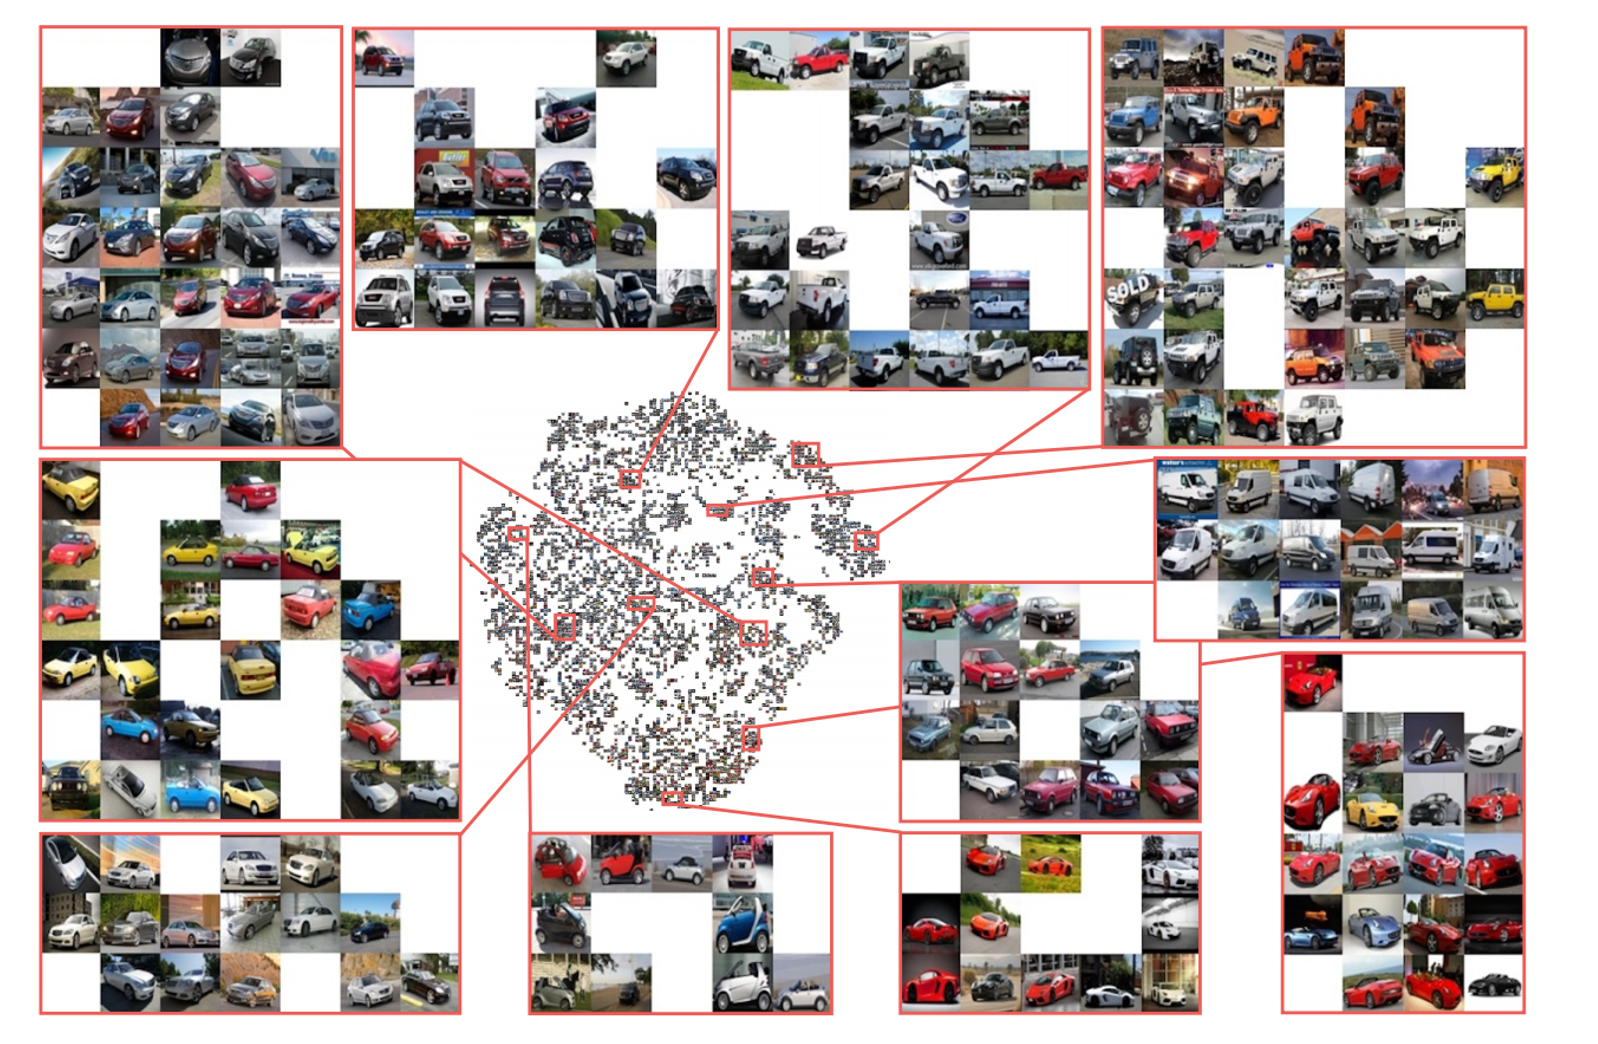 Отображение фотографий автомобилей в пространство признаков. Точки - дескрипторы.
Источник изображения: https://arxiv.org/pdf/1511.06452.pdf